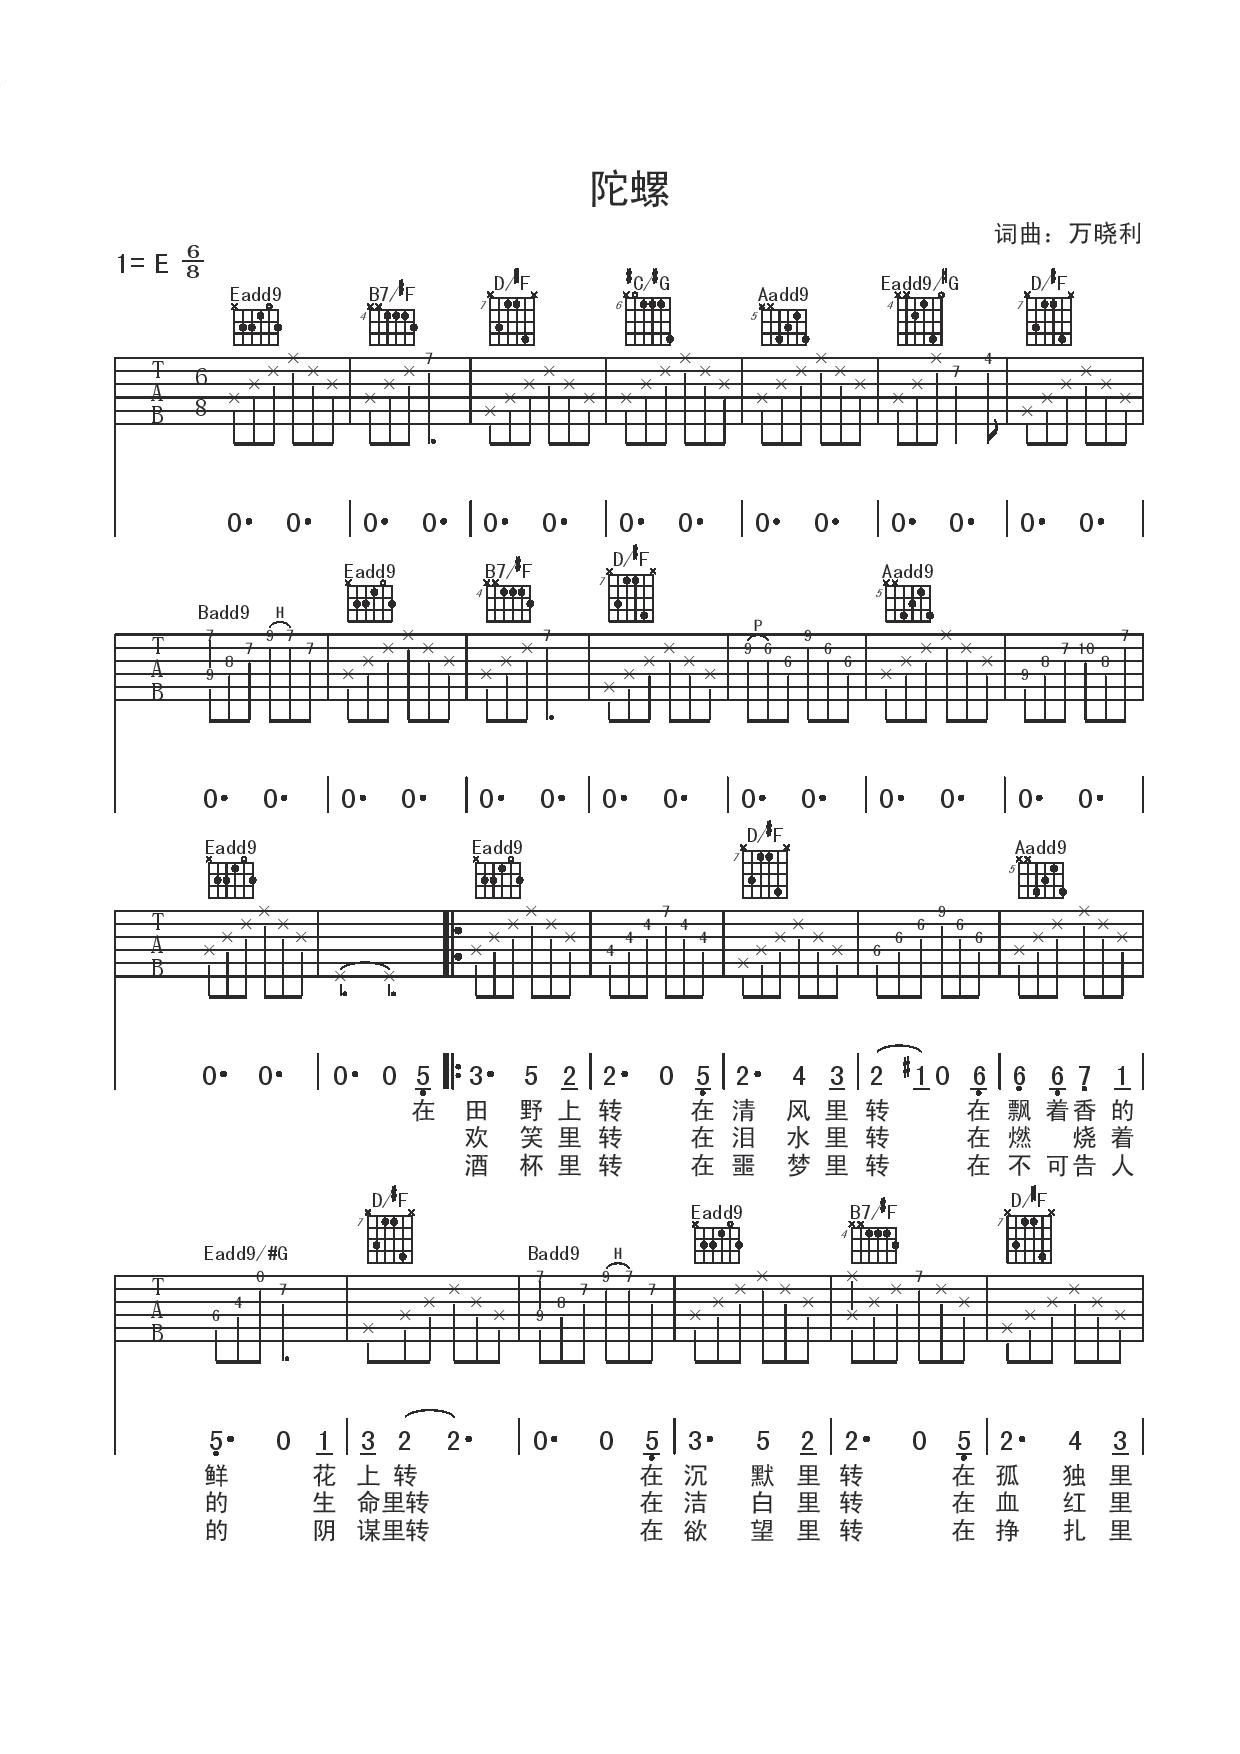 万晓利《陀螺》吉他谱(E调)-Guitar Music Score